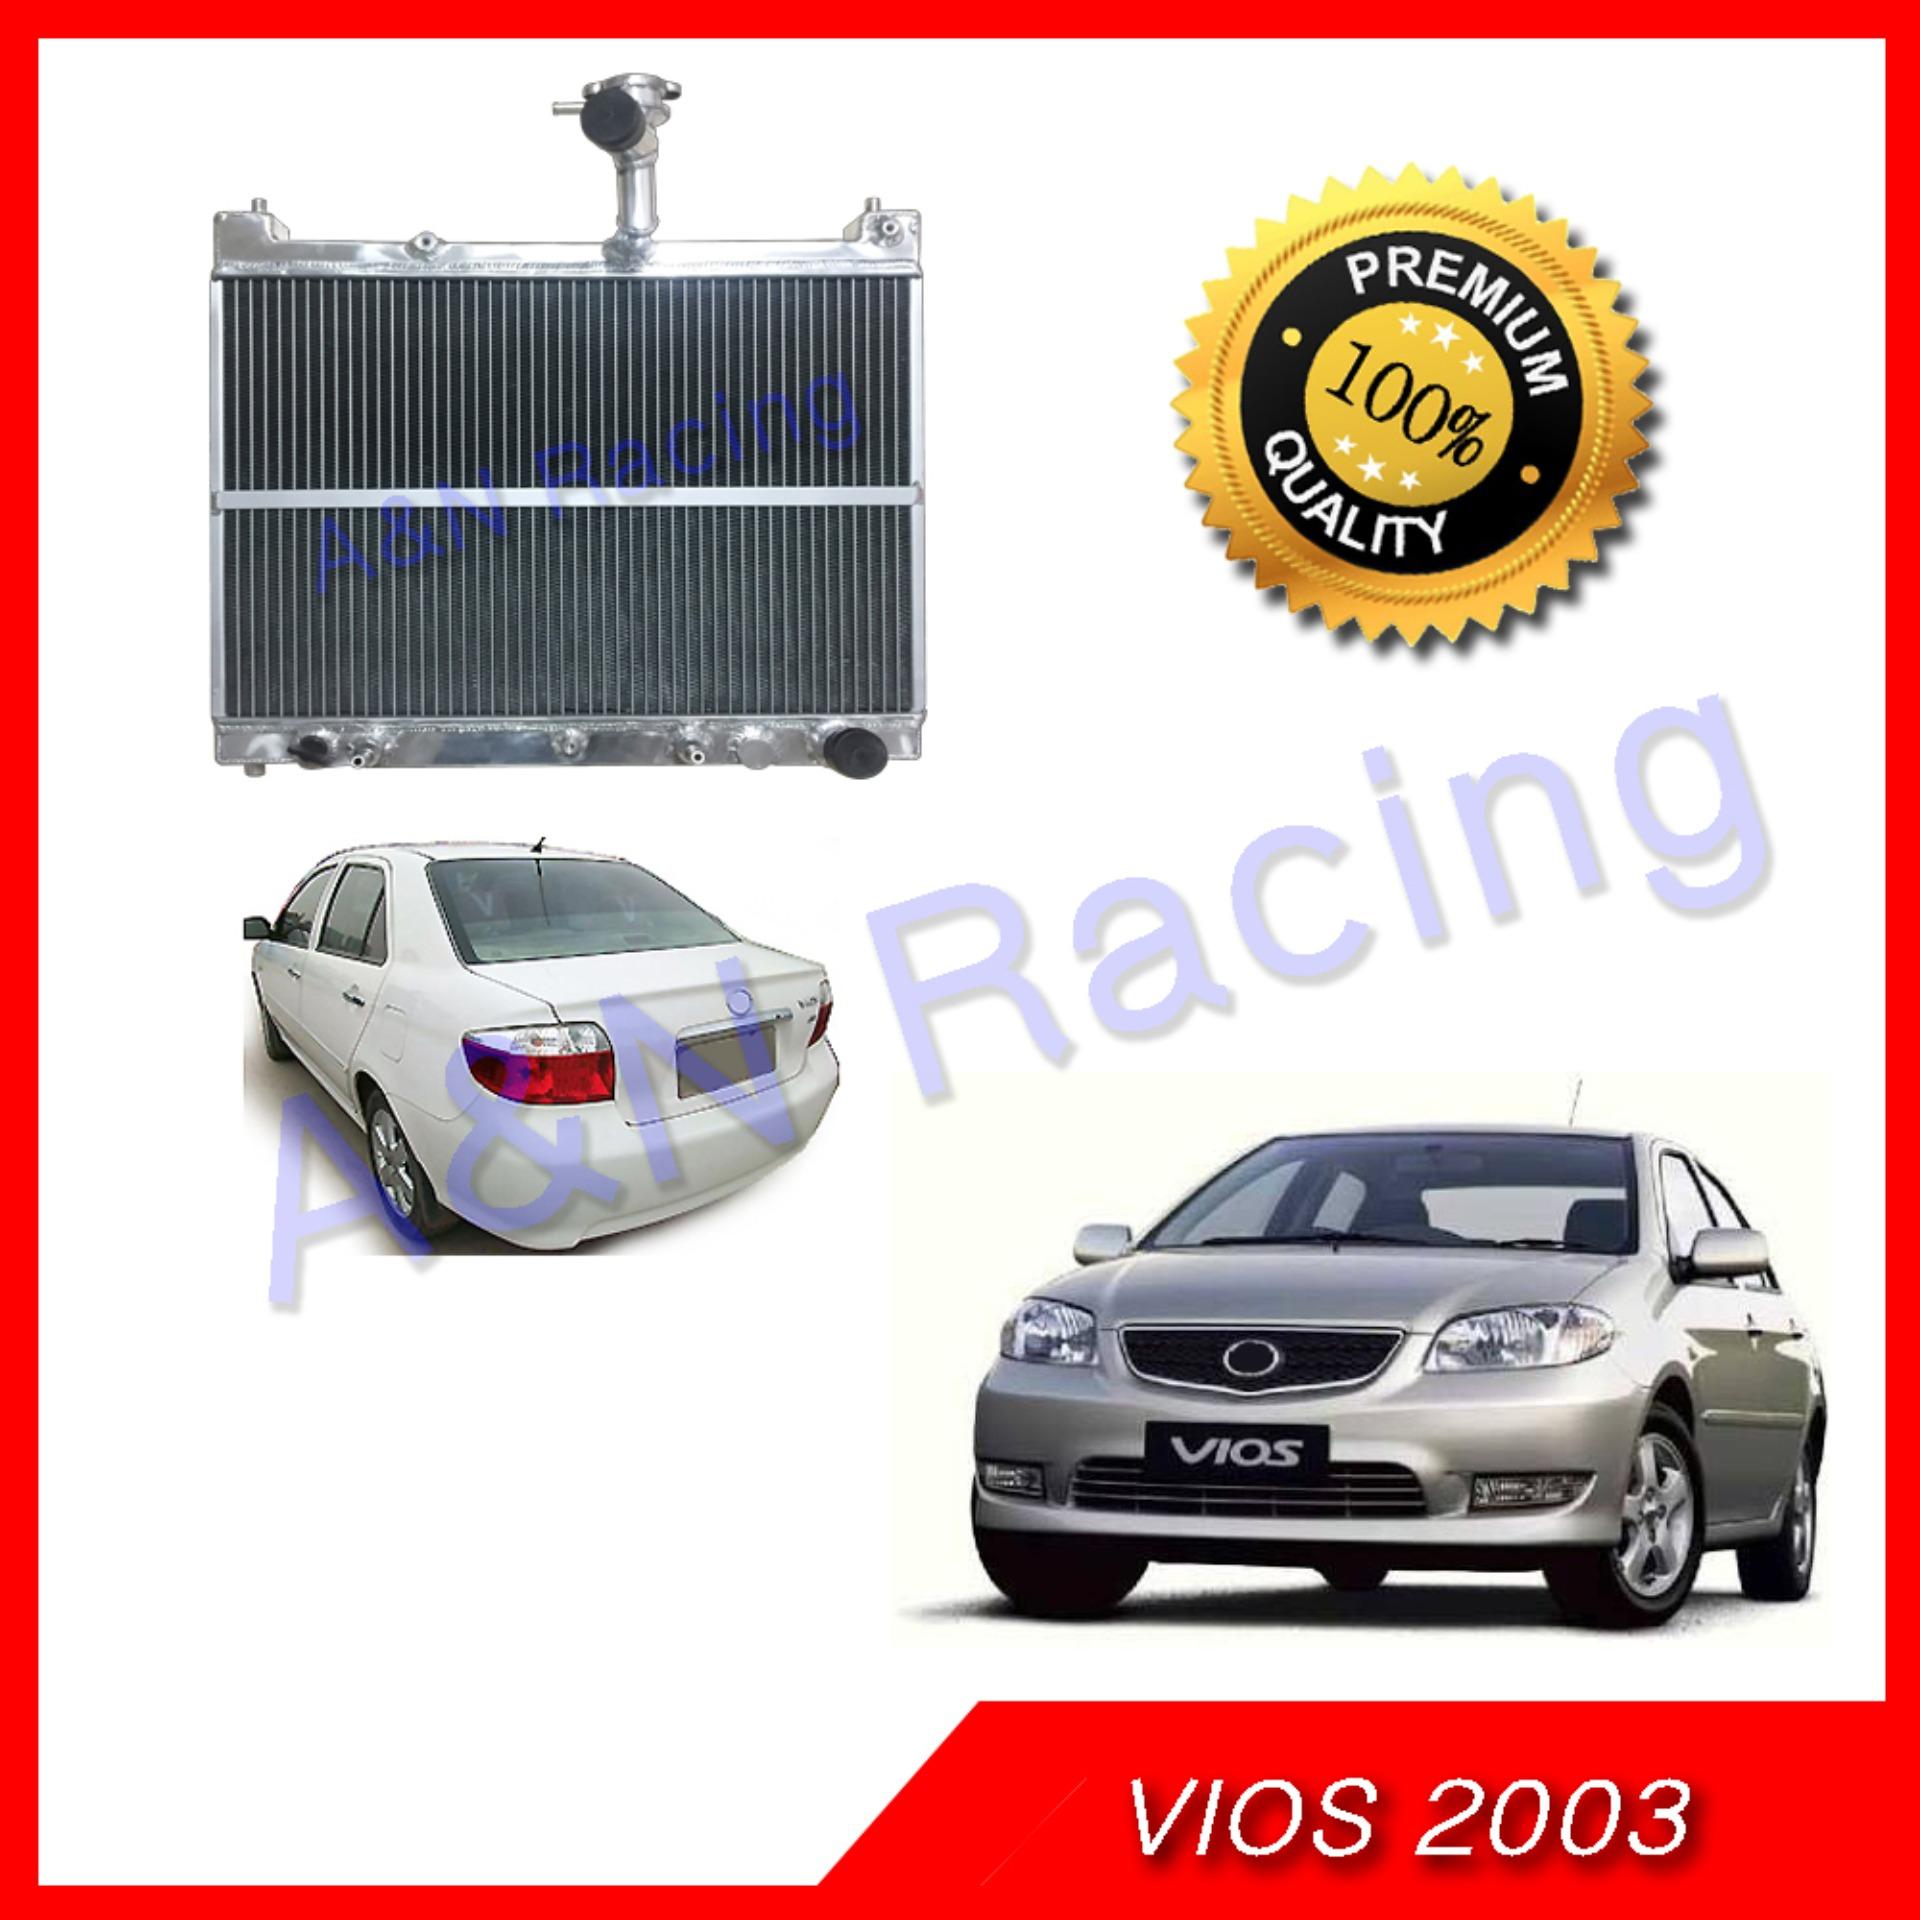 หม้อน้ำ รถยนต์ วีออส ปี 2003-2007 หนาพิเศษ 40 มิล 2 ช่อง อลูมิเนียมทั้งใบ Toyota Vios รุ่น1 001053